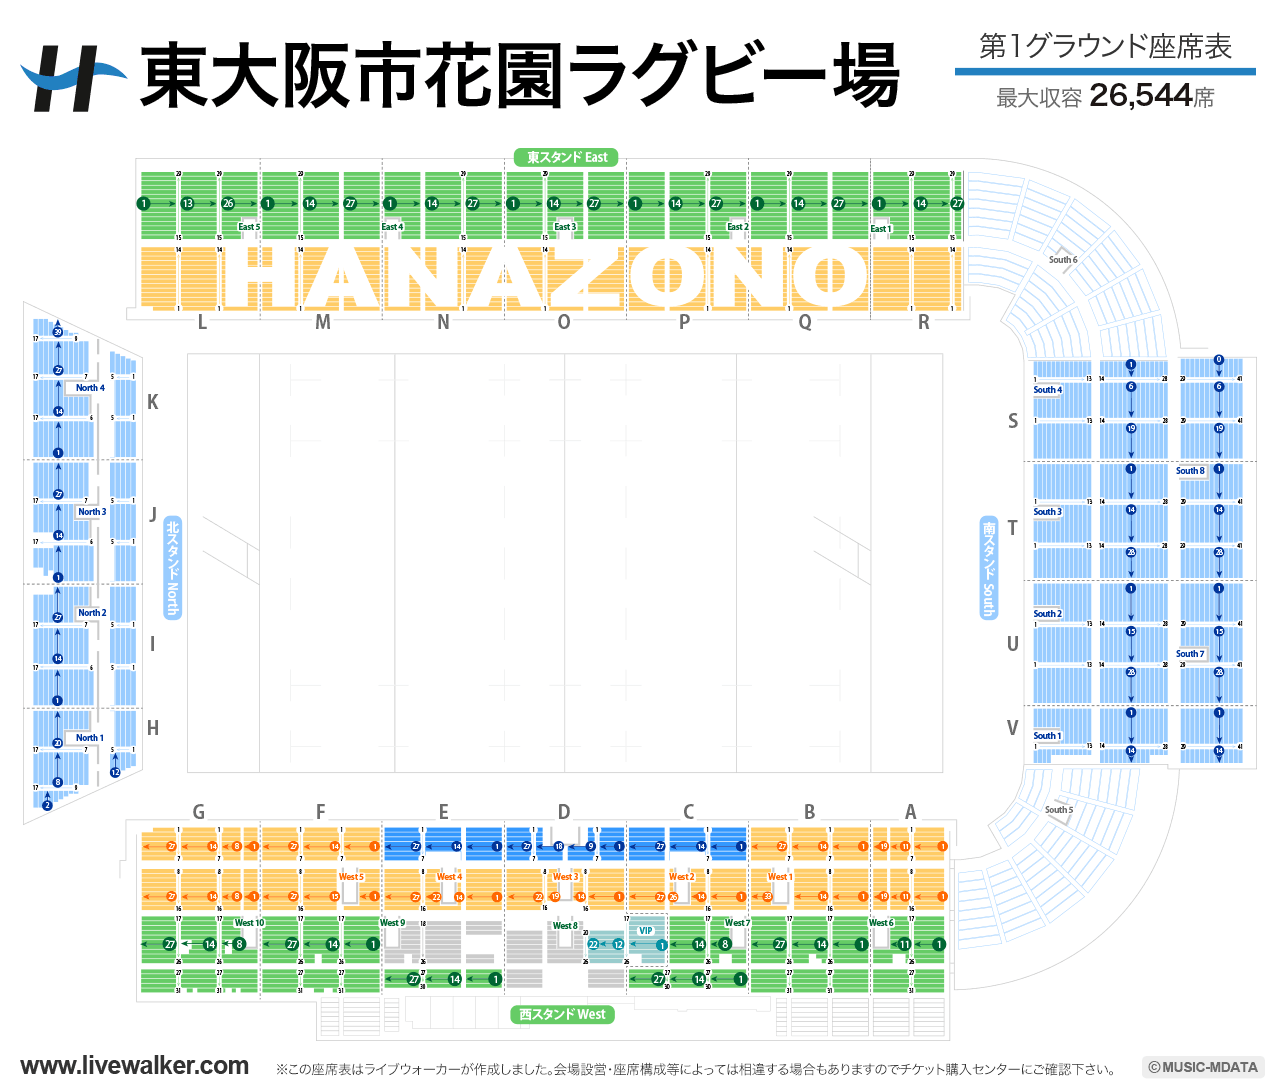 東大阪市花園ラグビー場第1グラウンドの座席表